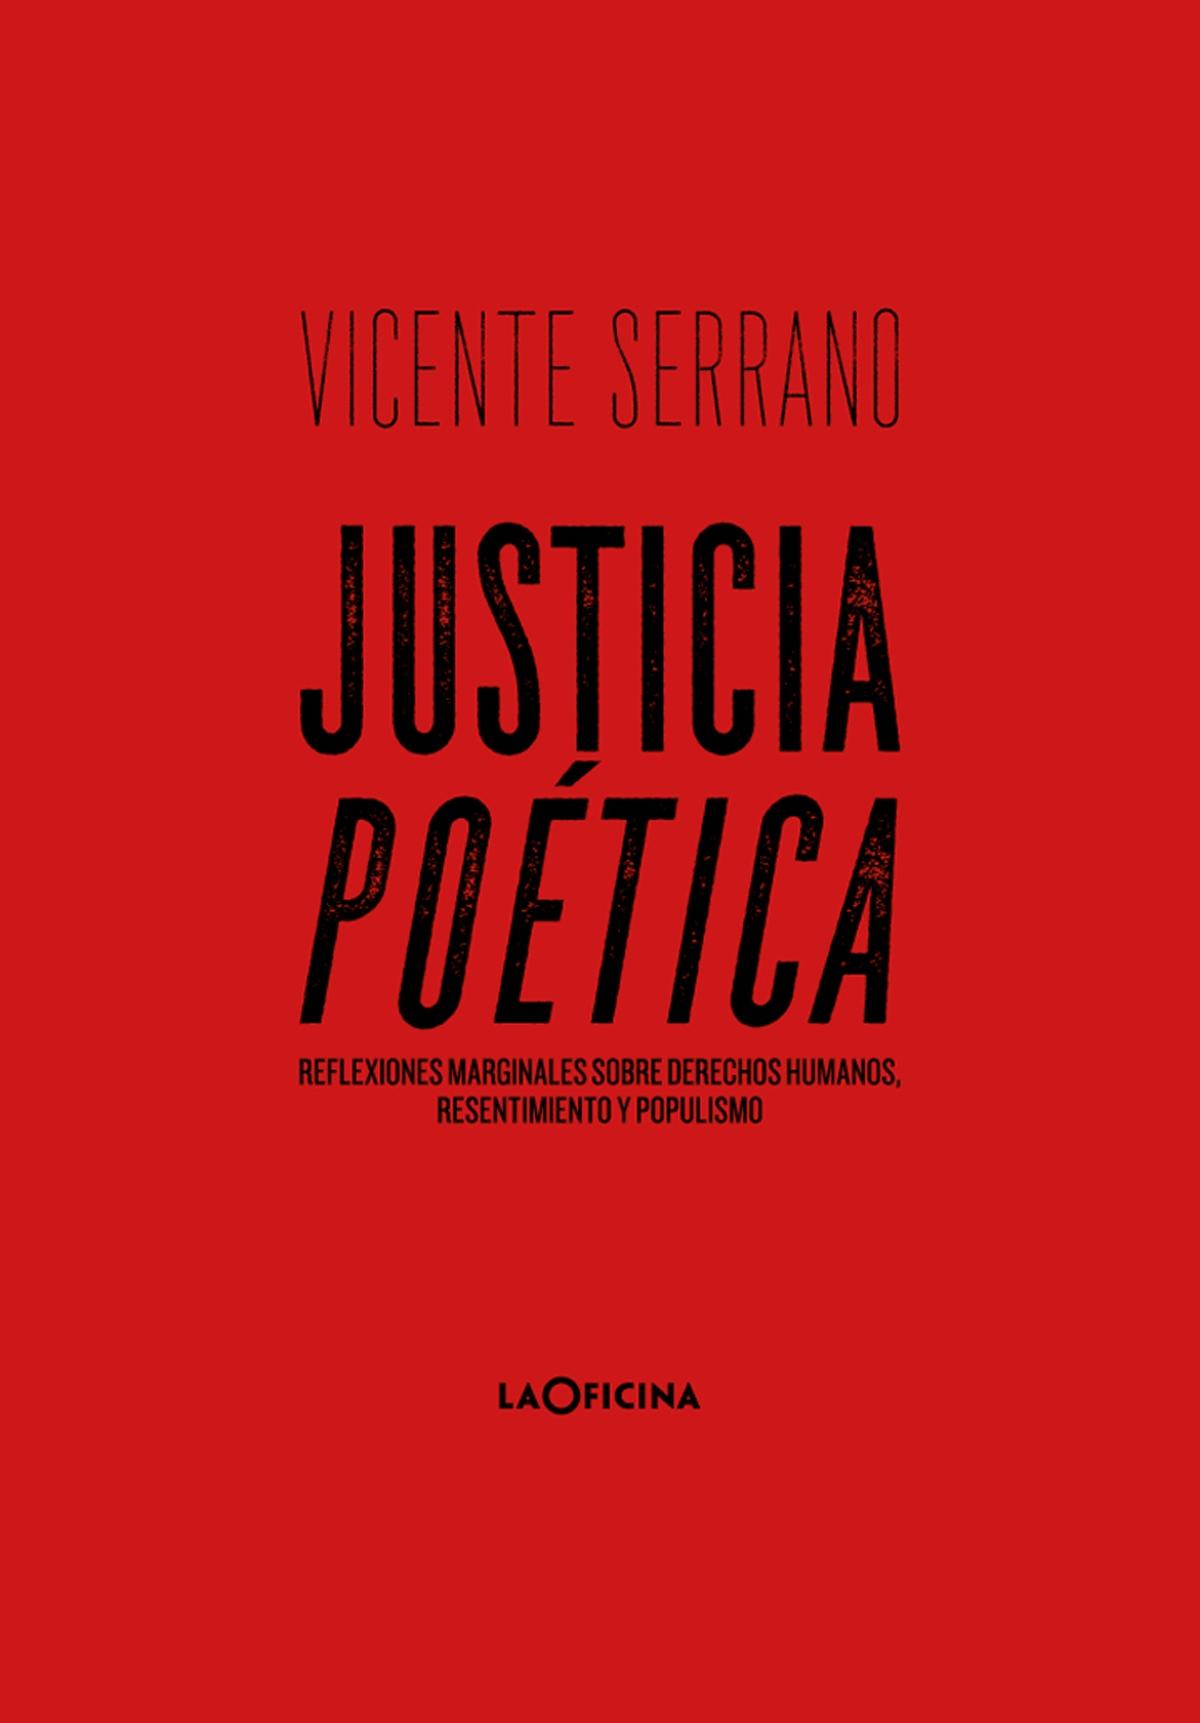 Justicia poética "Reflexiones marginales sobre derechos humanos, resentimiento y populismo". 